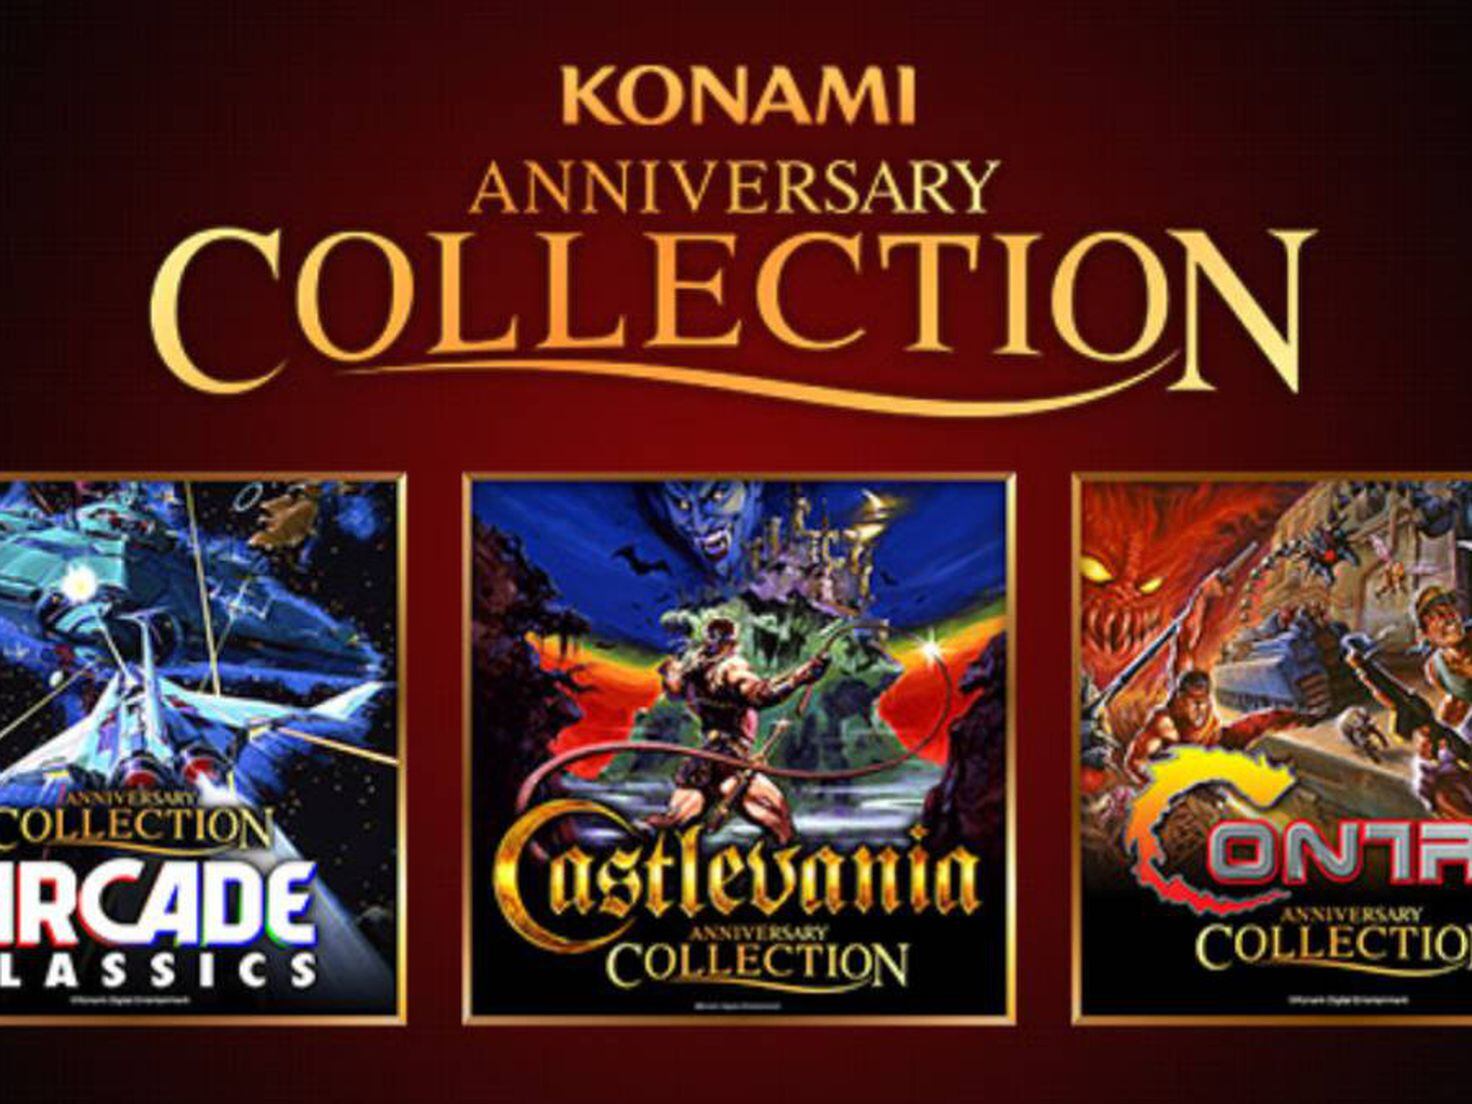 Análisis de Castlevania Anniversary Collection para PS4, Xbox One, Nintendo  Switch y PC